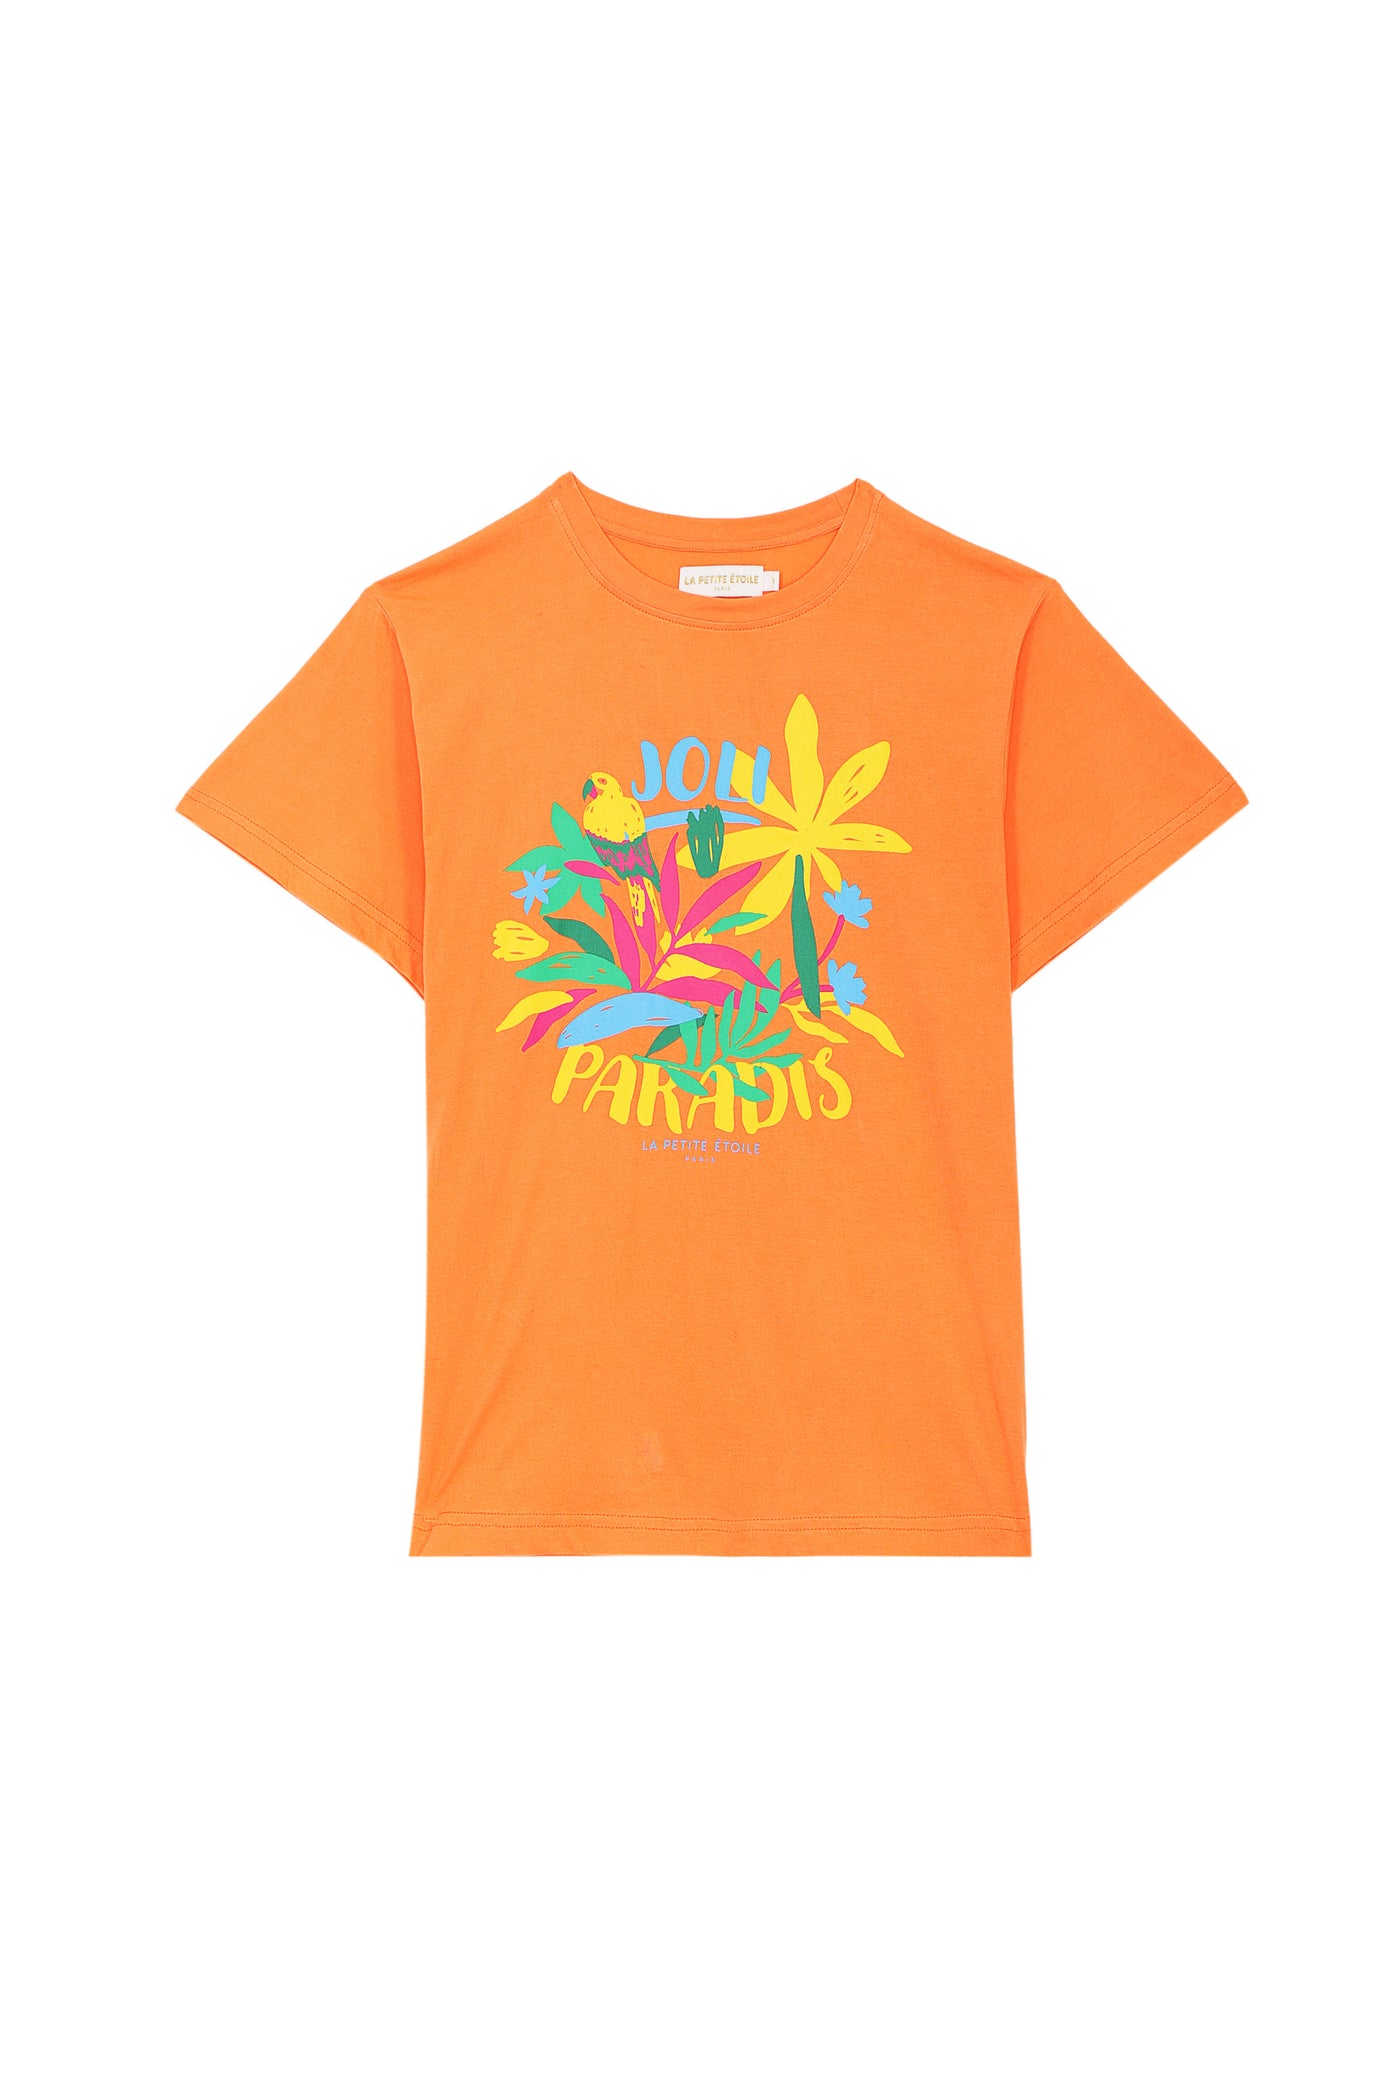 T-shirt Taradis - Orange